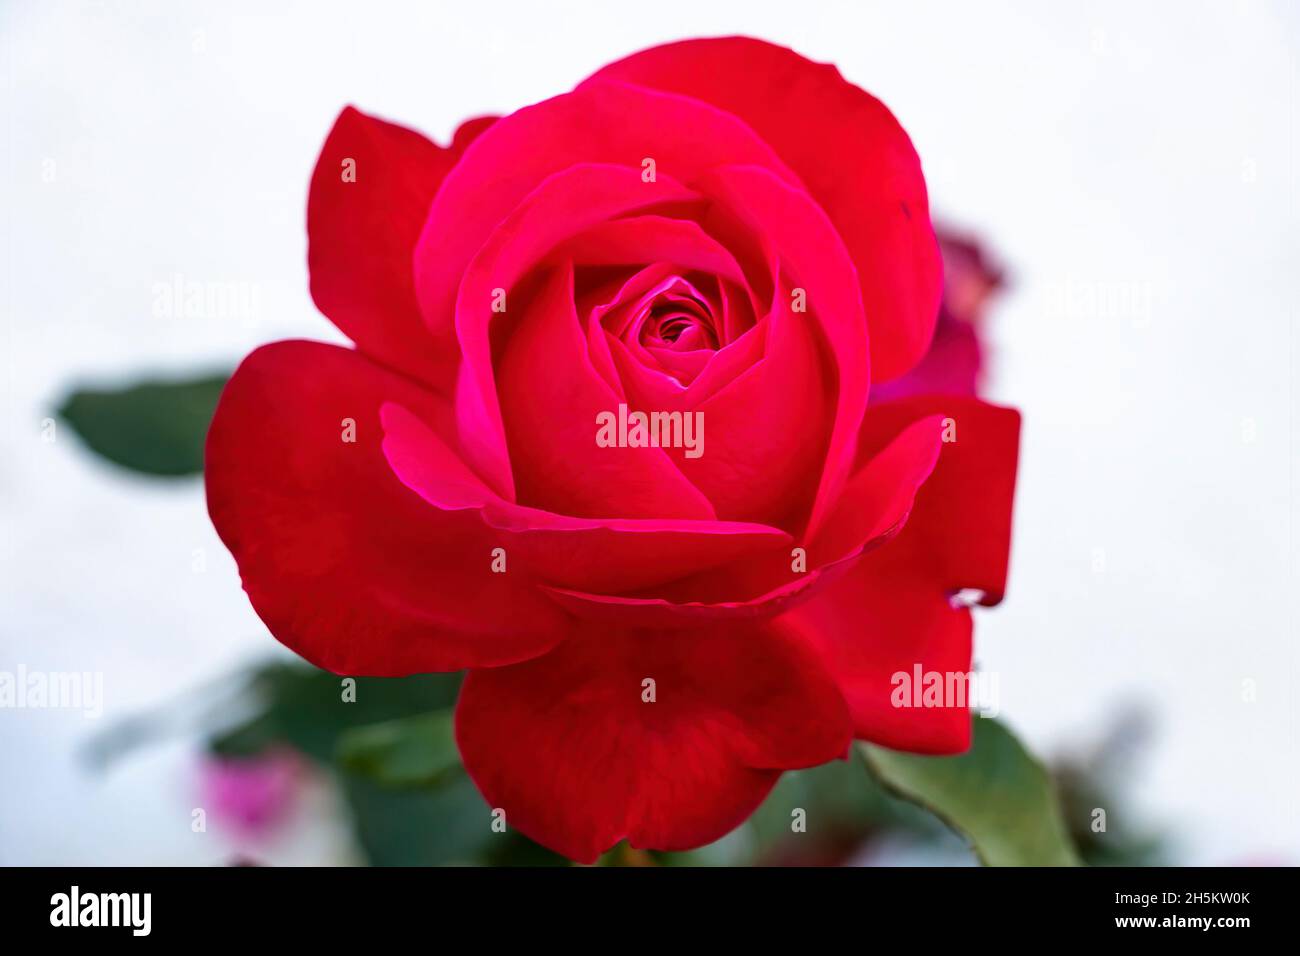 Rote Rose... Die Rosa-Gattung besteht aus einer bekannten Gruppe von meist dornigen und blumigen Sträuchern, den wichtigsten Vertretern der Familie der Rosaceae.die Stockfoto